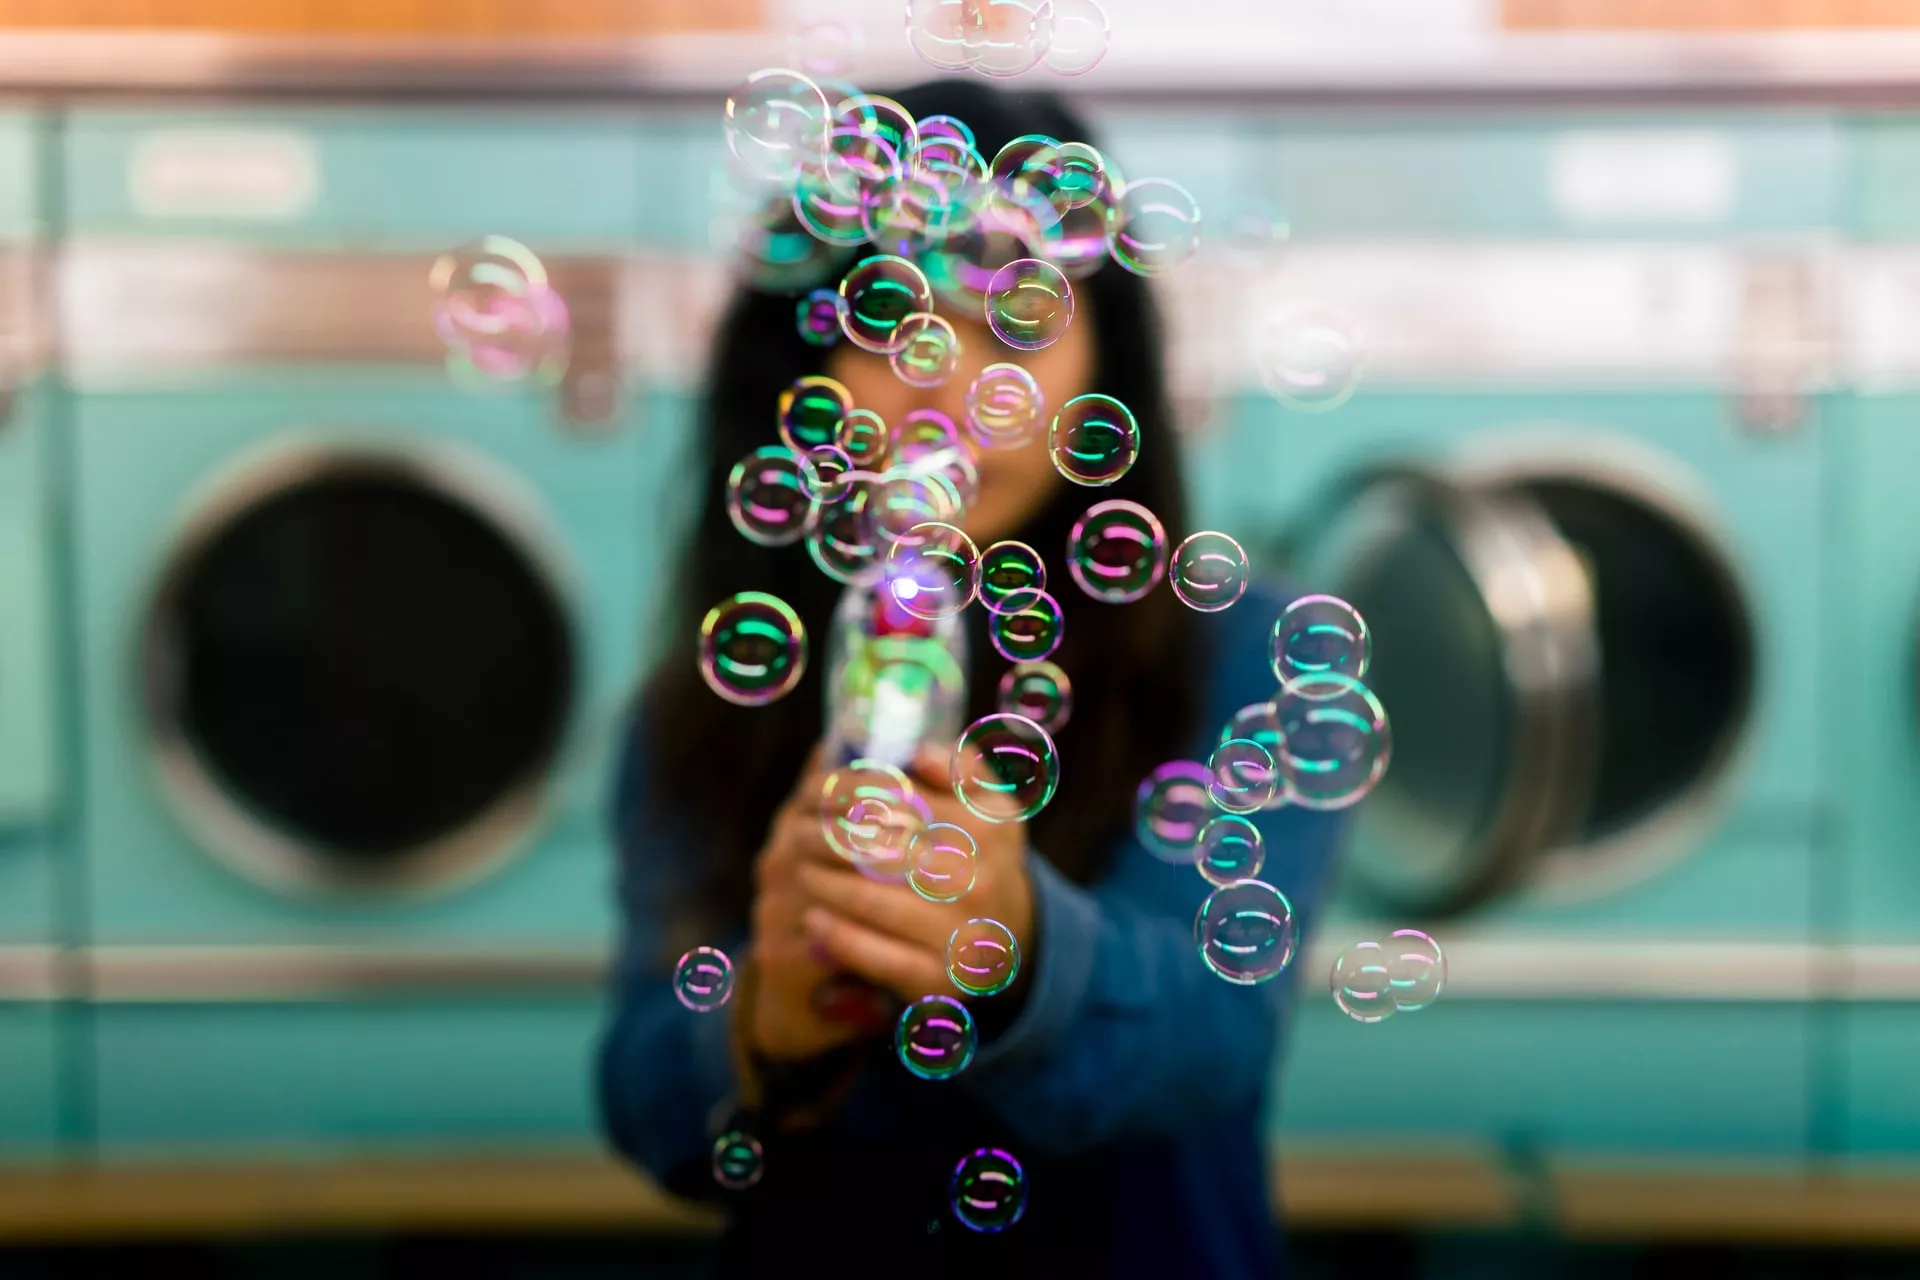 Якщо складно представляти тривожні думки у віжі бульбашок, то візьміть дитячі мильні бульбашки або приготуйте їх із шампуню/рідкого мила